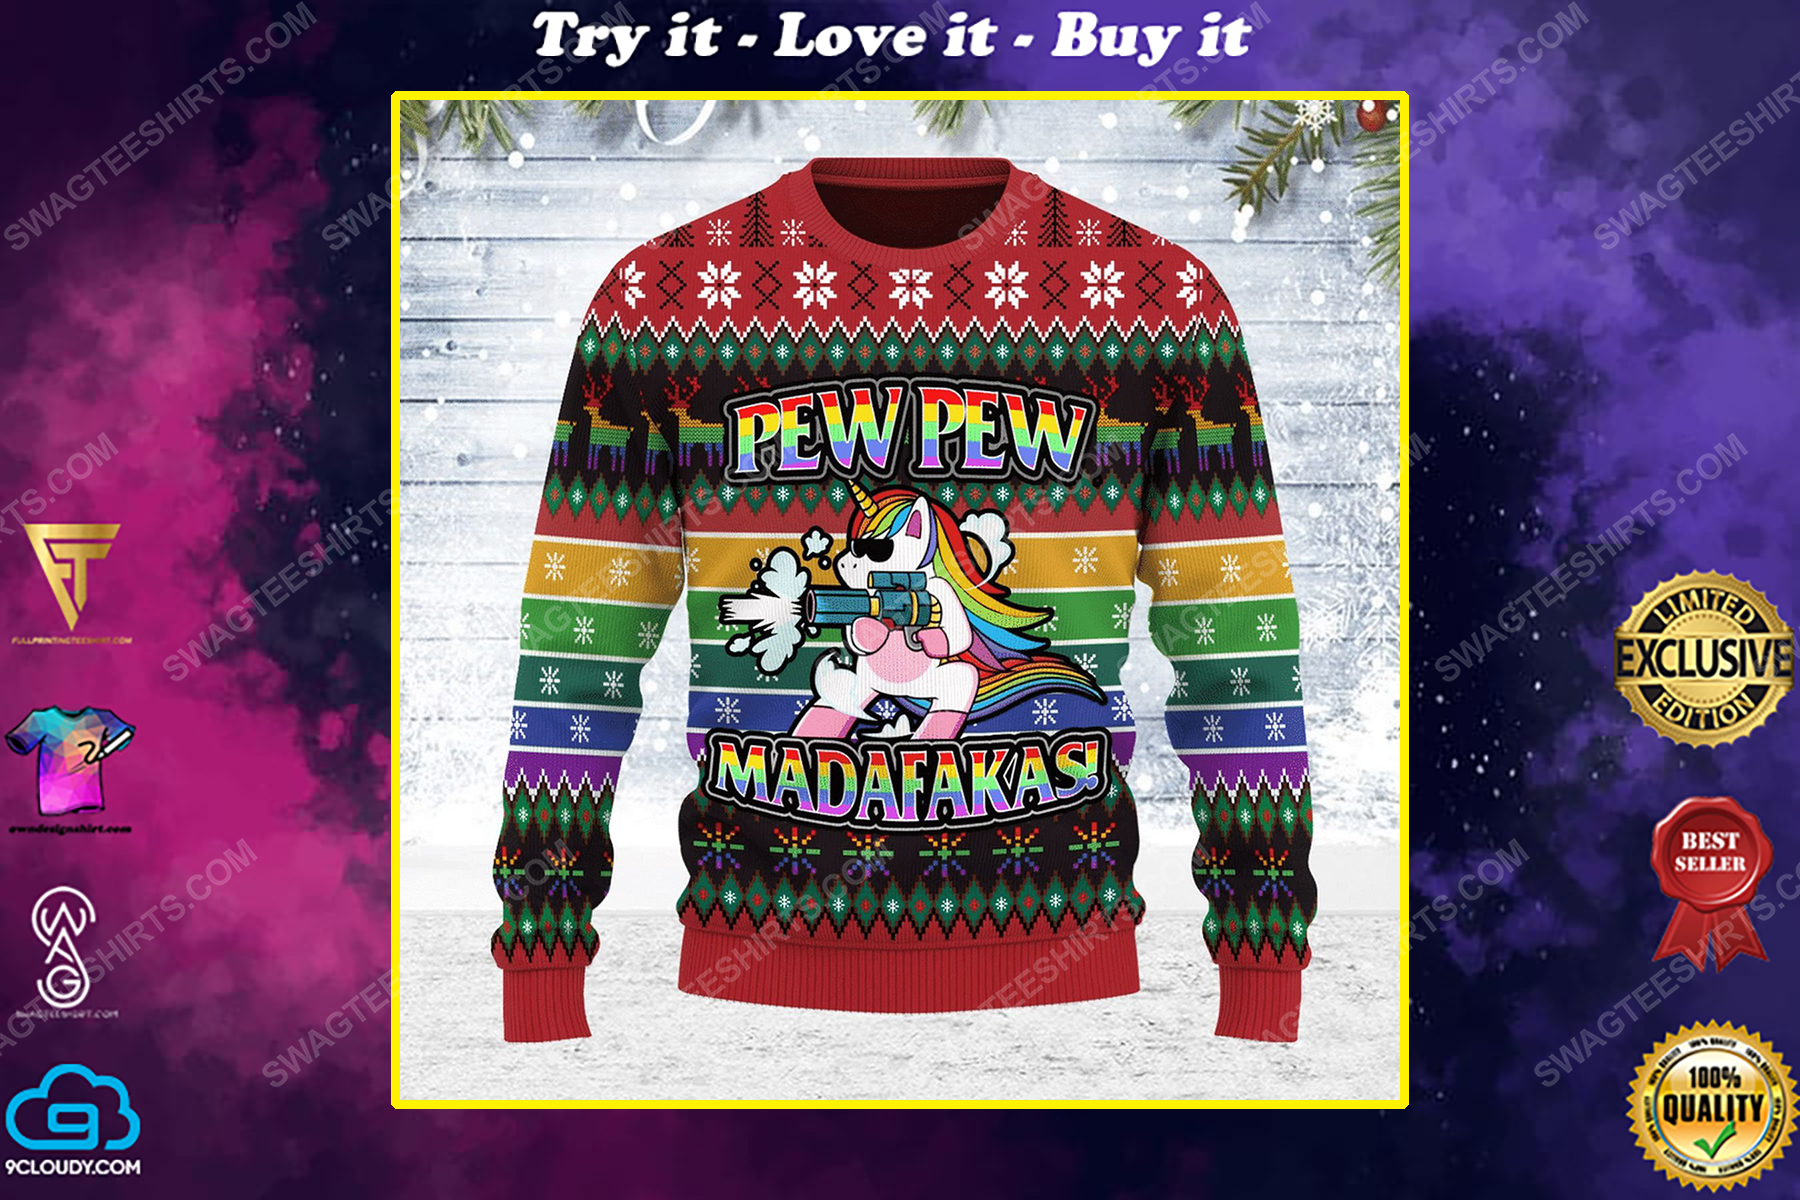 Unicorn pew pew madafakas ugly christmas sweater 1